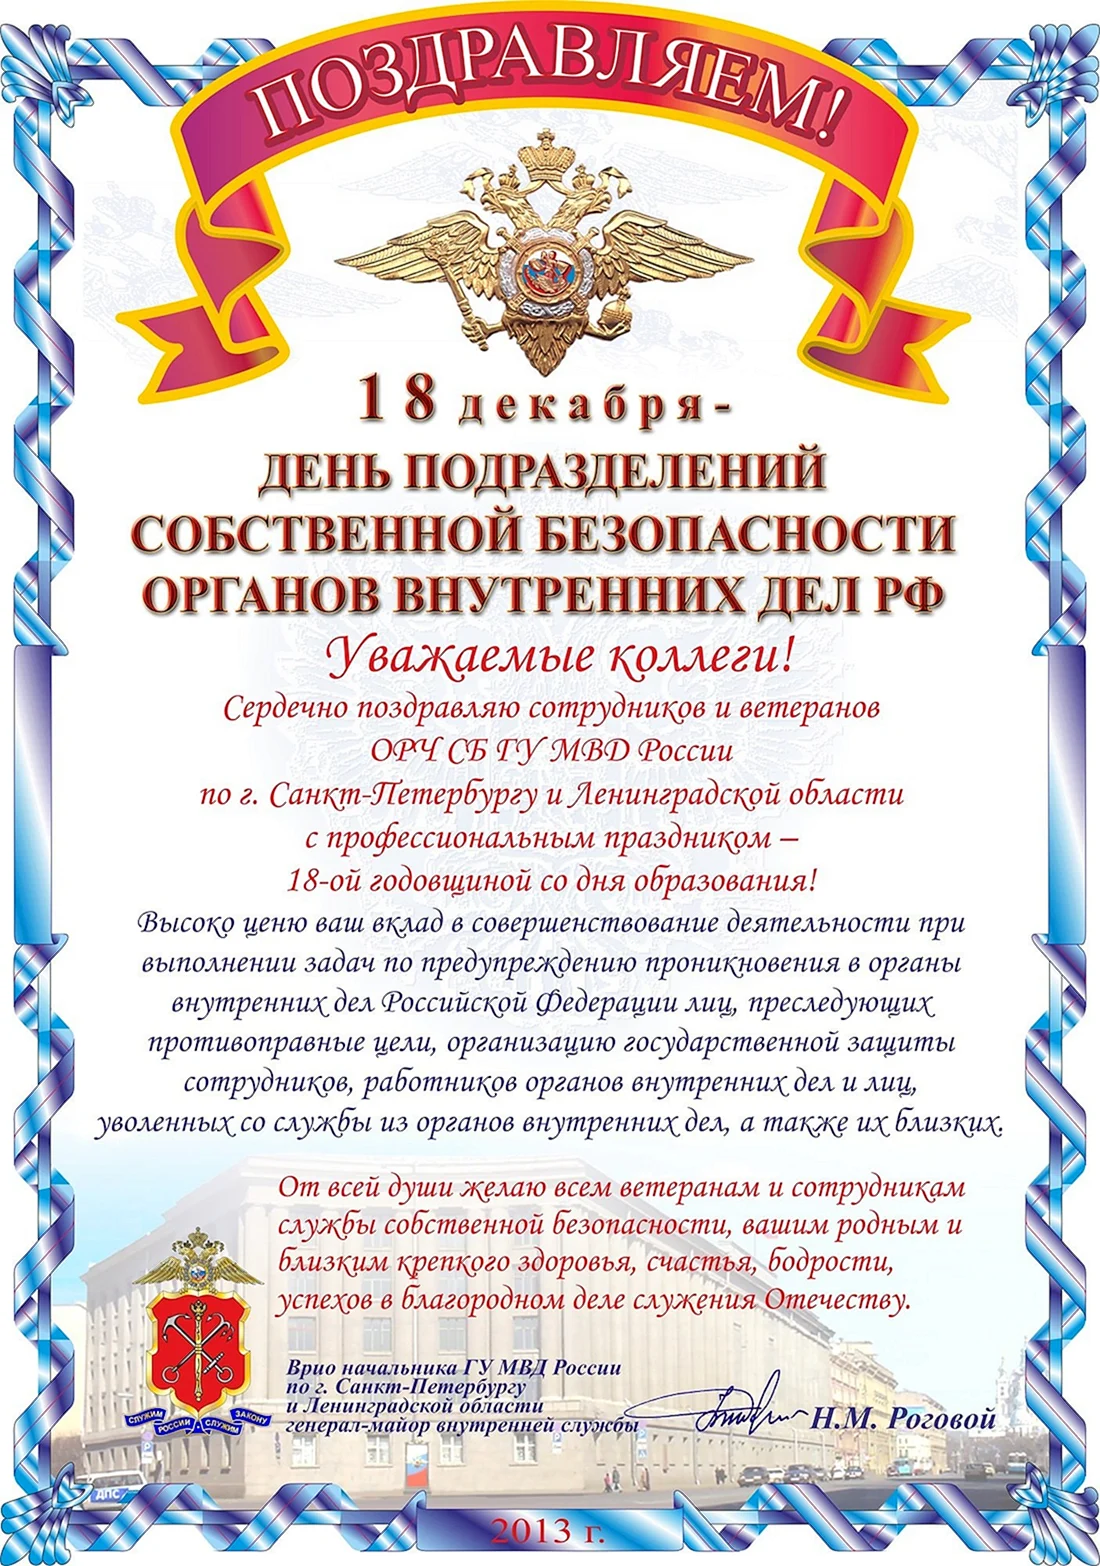 День службы собственной безопасности МВД РФ 18 декабря